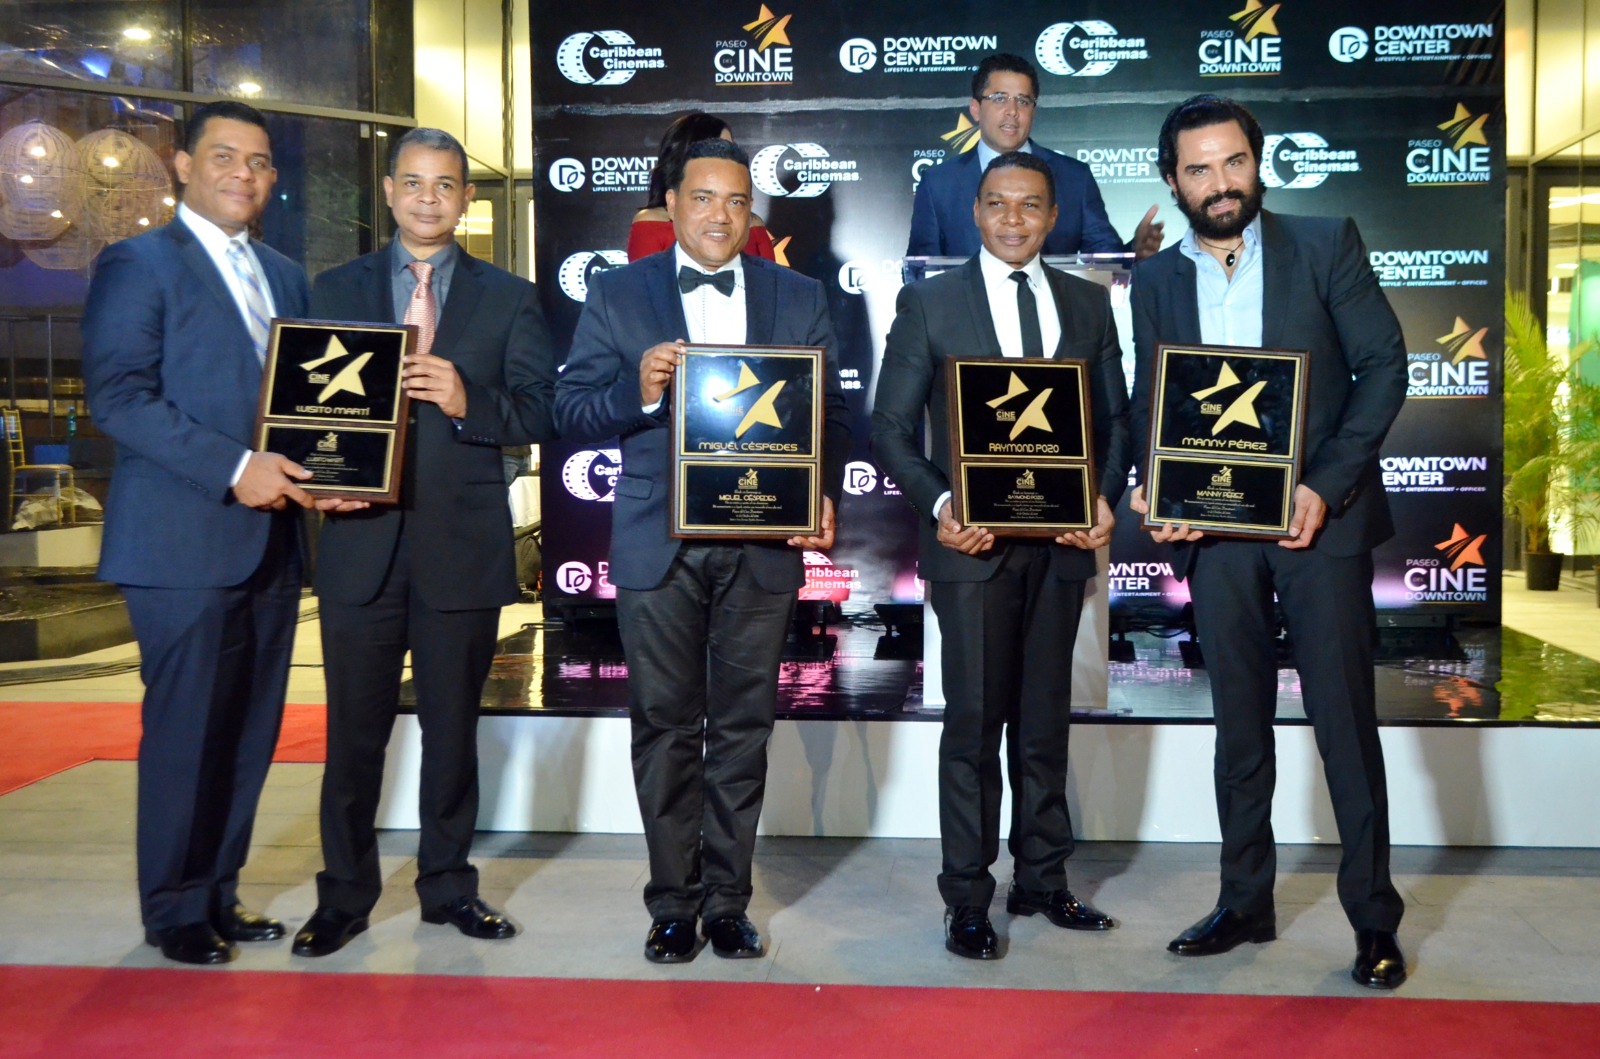 Los primeros reconocidos con sus estrellas en el Paseo del Cine en 2016: Luisito Martí (póstumo), Raymond Pozo, Miguel Céspedes y Manny Pérez, en 2016.